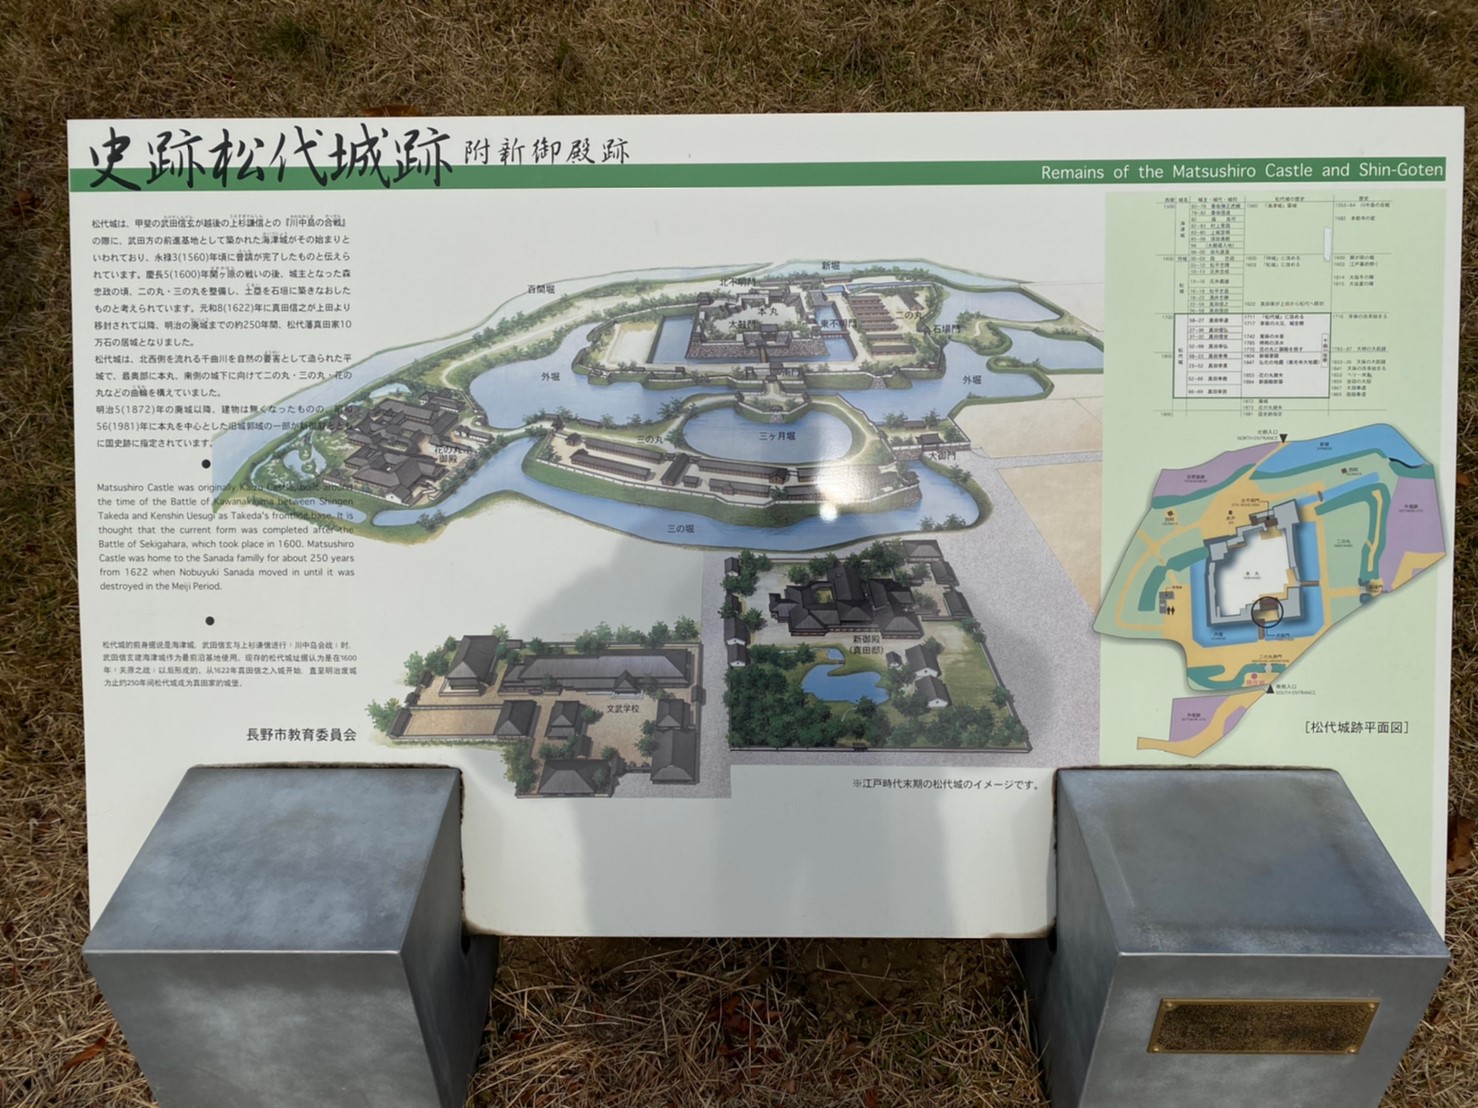 長野県 海津城として名高い 松代城 見所とアクセス方法を事前にチェック 日本の名城 Com